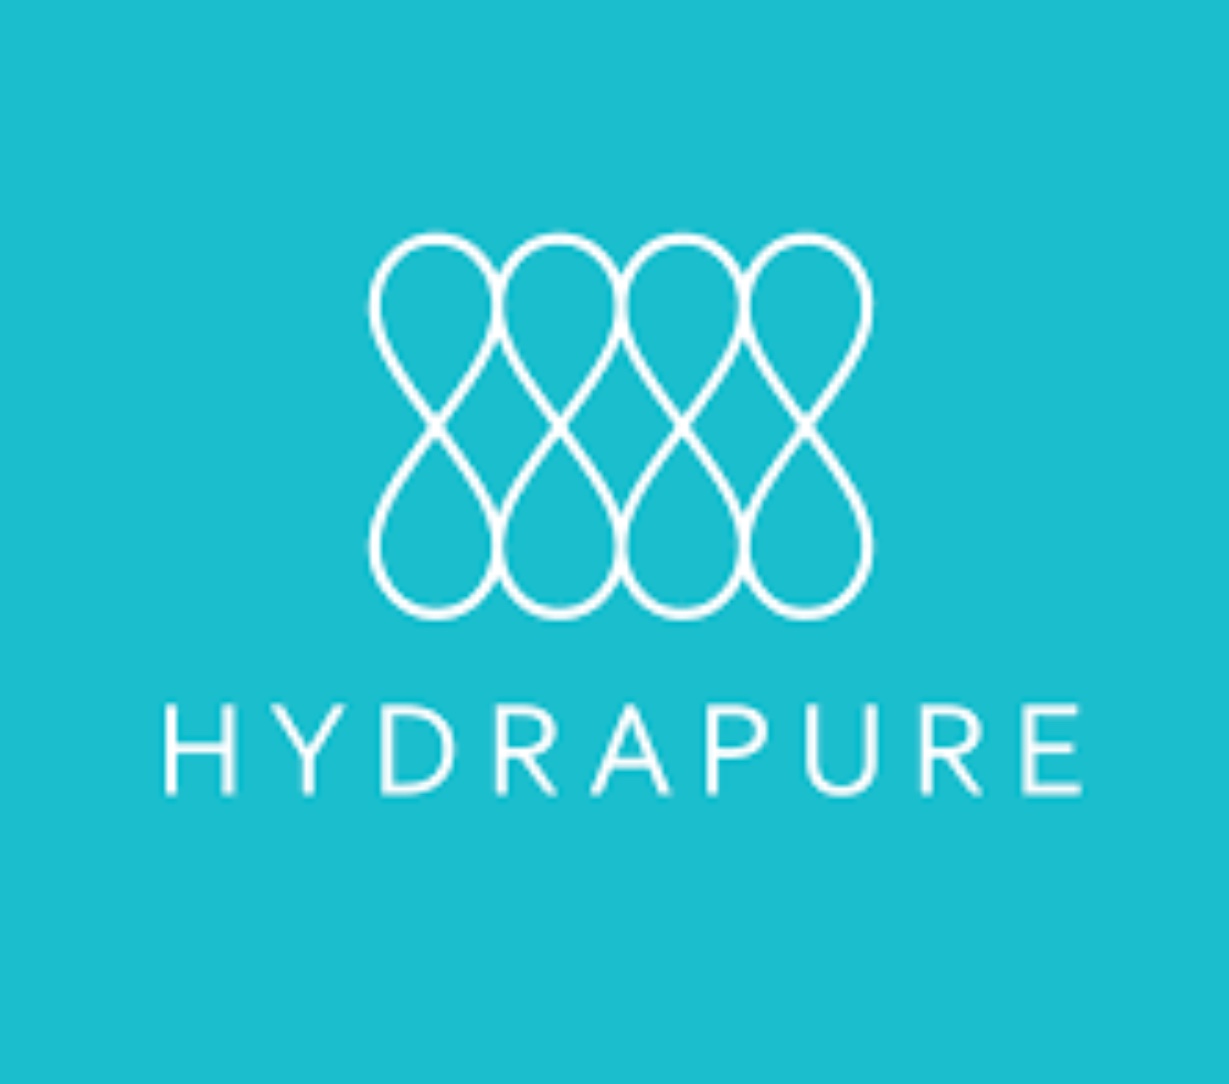 Le logo HydraPure sur fond turquoise met en valeur l'excellence en soins esthétiques.